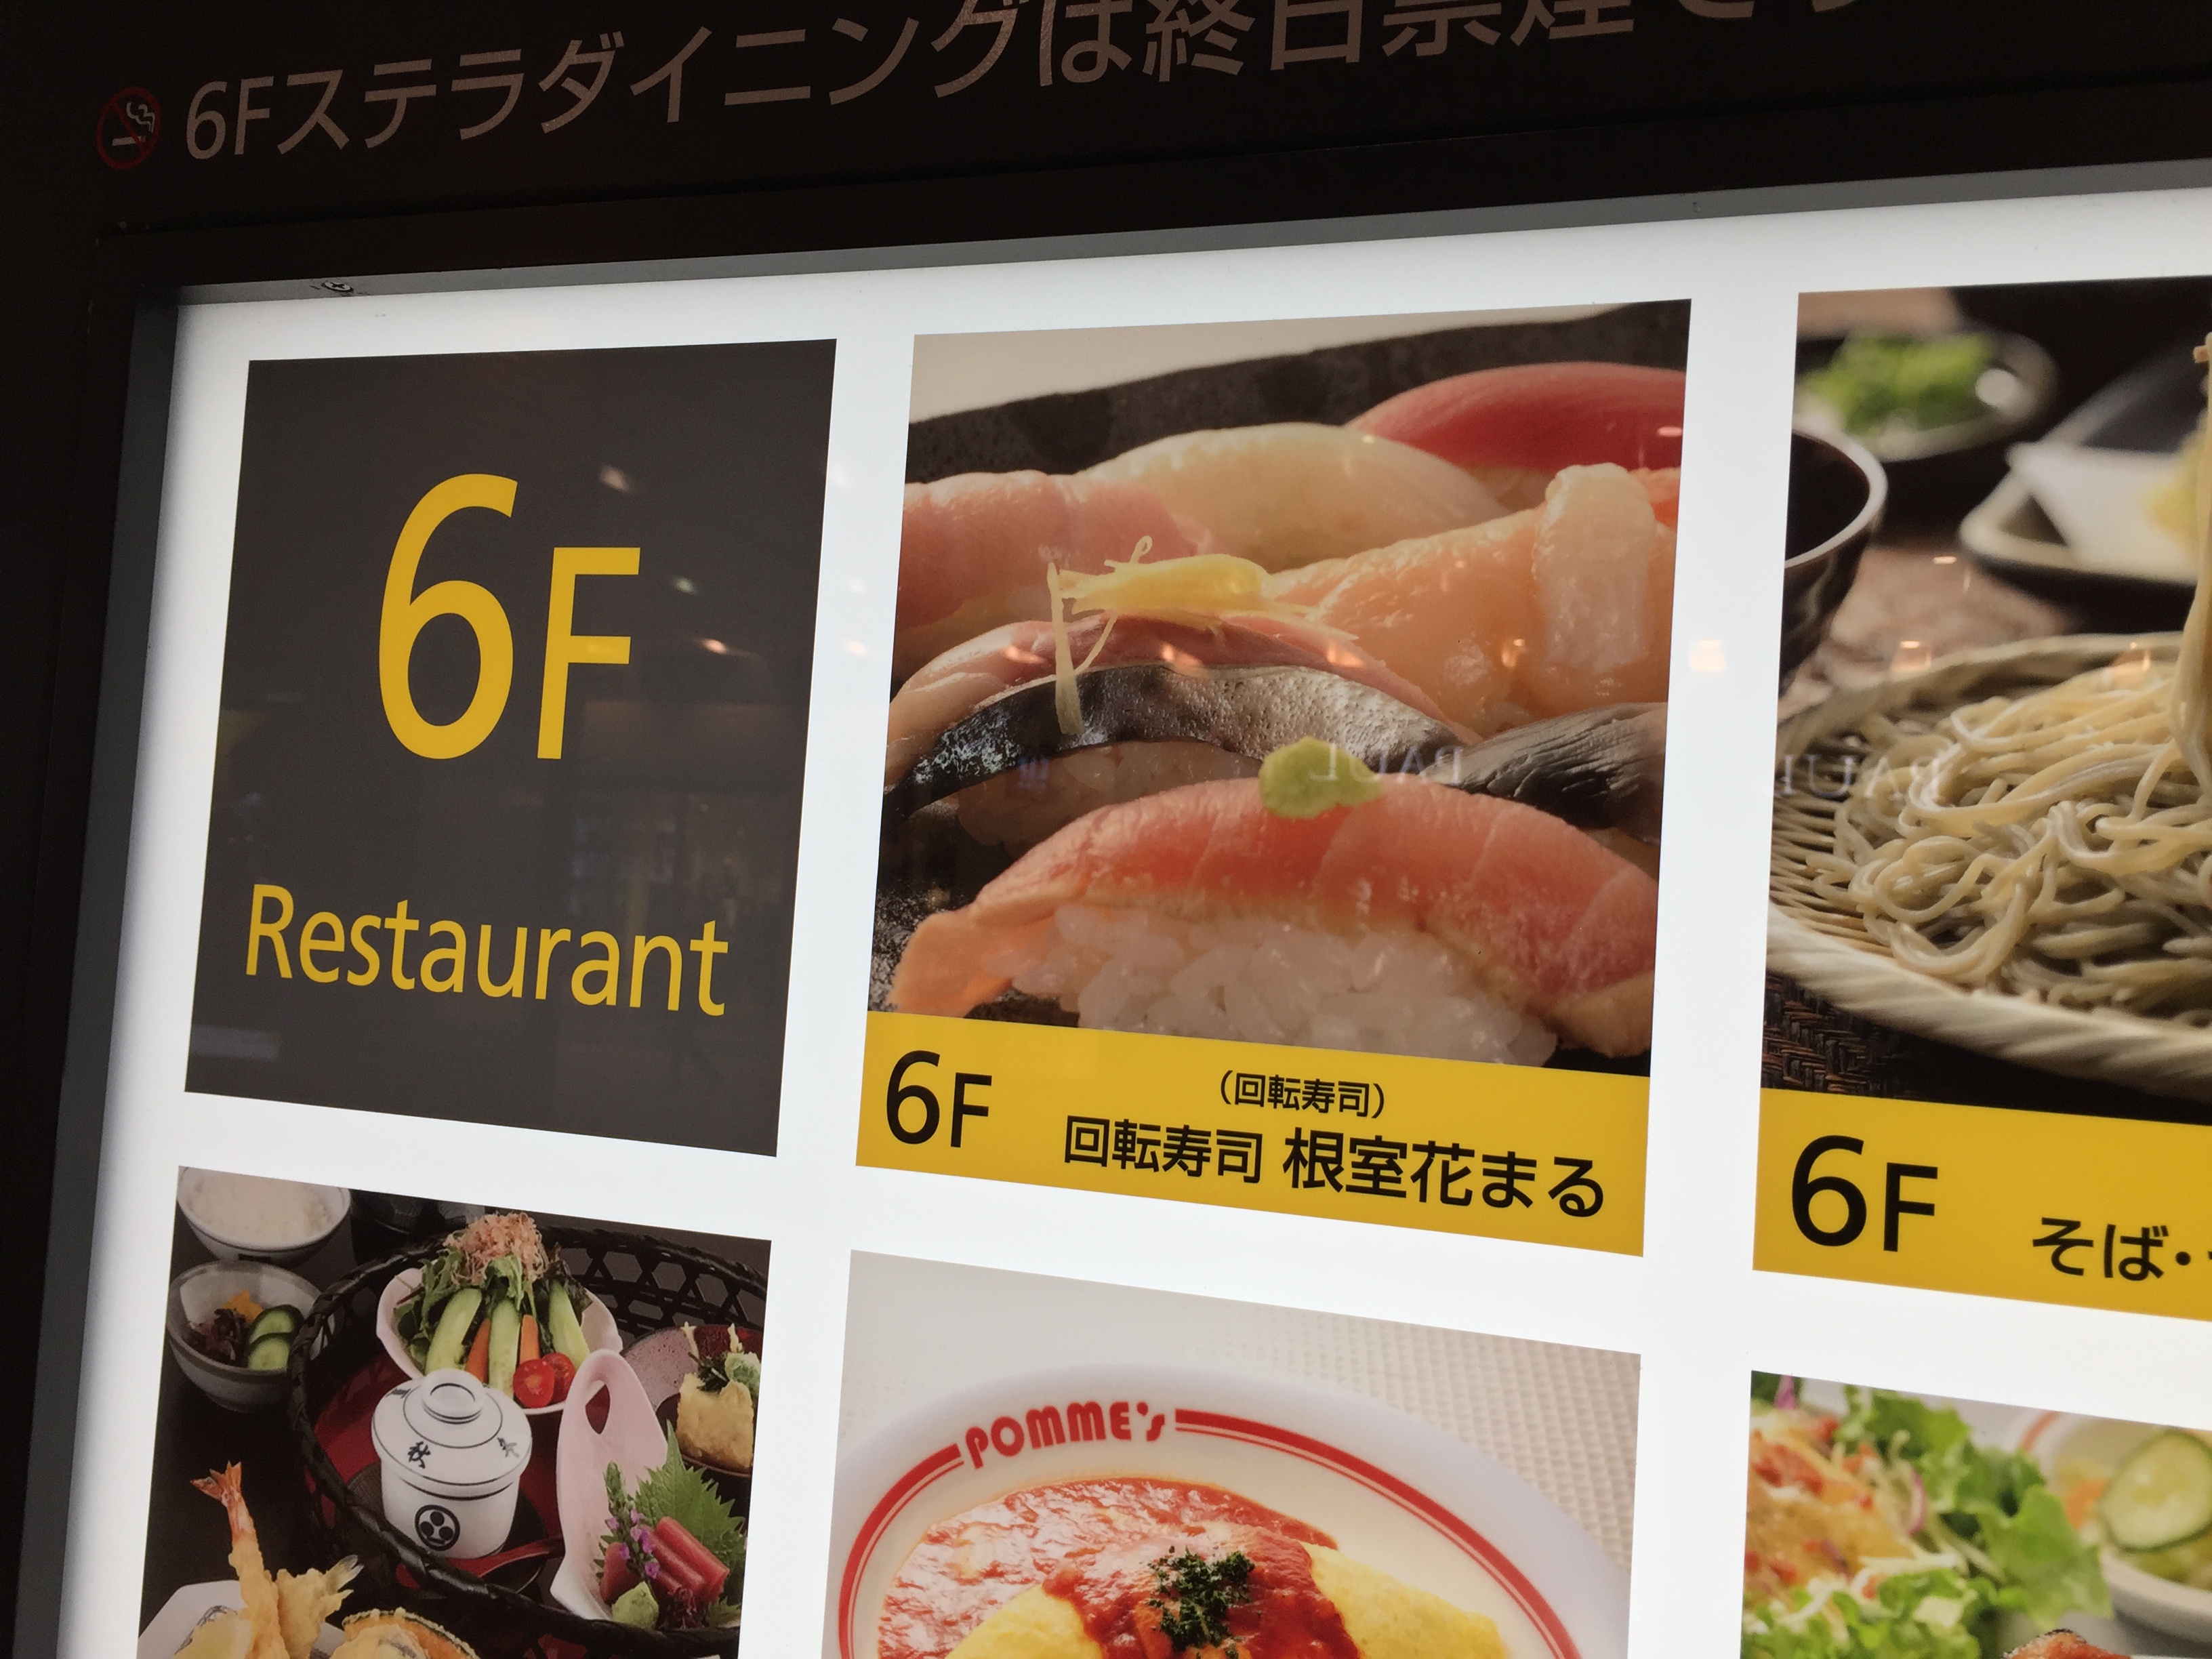 札幌旅行の回転寿司なら 根室花まる がコスパ最高なうえにアクセスも便利でオススメ ひつろぐ